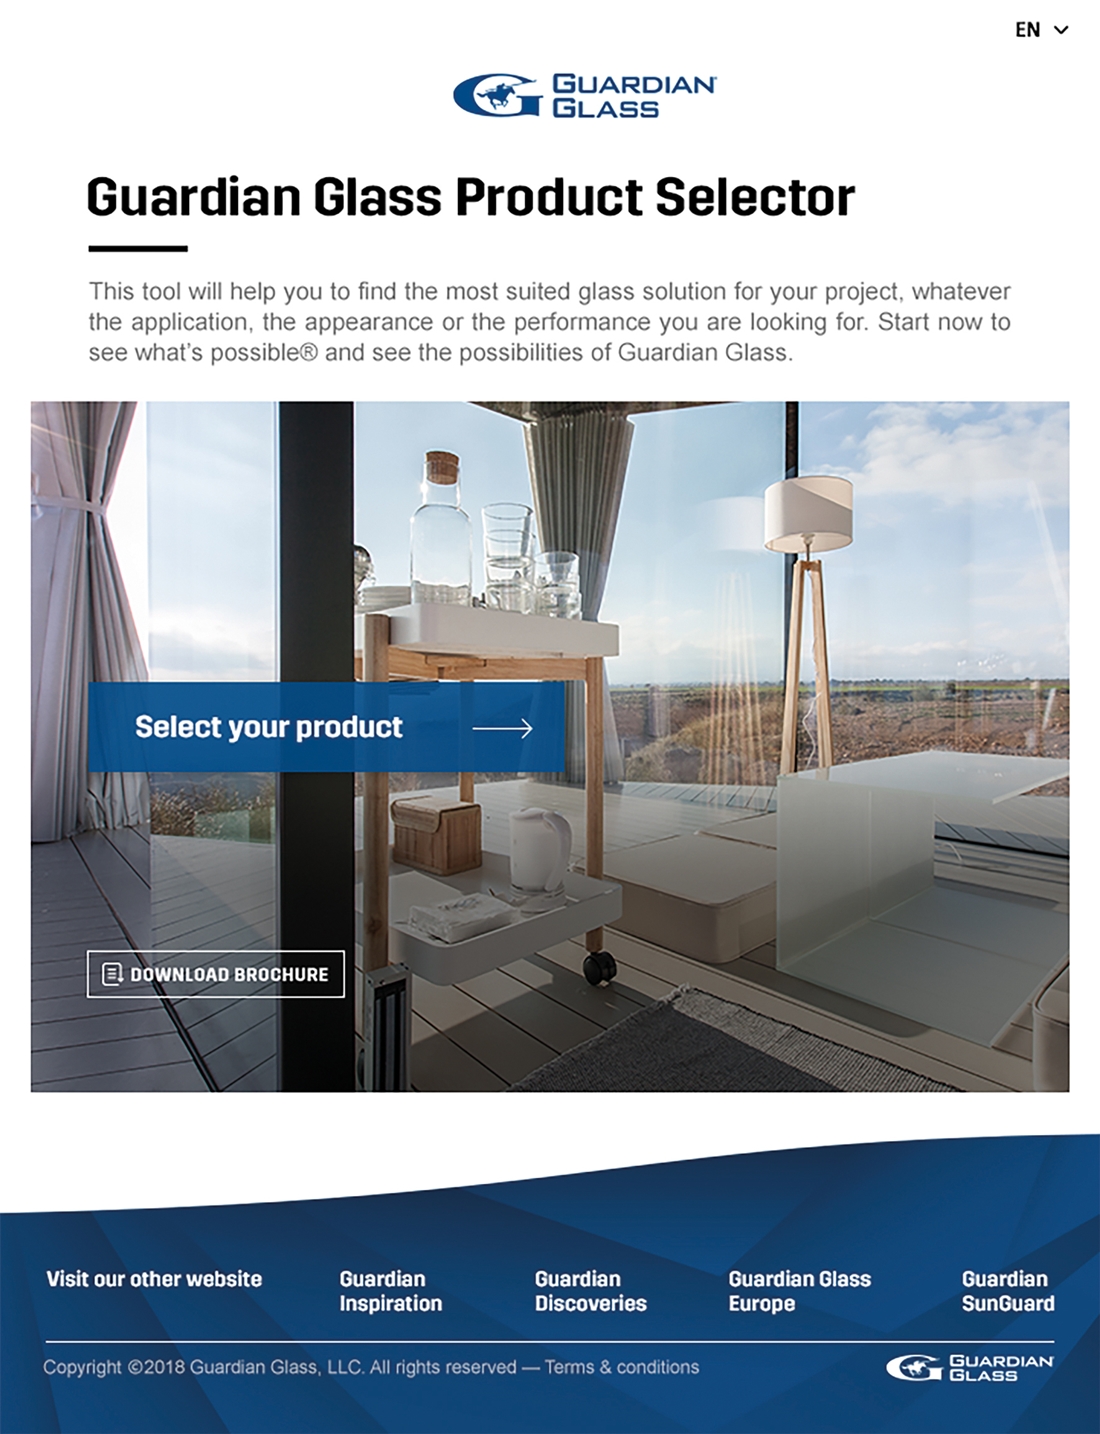 Z nowym internetowym Selektorem Produktów od Guardian Glass w klika minut znajdą Państwo odpowiednie szkło architektoniczne , Guardian - Bertrange, Luksemburg, 30 listopada, 2018 – Firma Guardian Glass Europe uruchomiła internetowy Selektor Produktów, który umożliwia klientom szybkie odnalezienie produktu Guardian Glass odpowiedniego dla realizowanego przez nich projektu, do tego niezależnie od zakładanego zastosowania, wyglądu oraz właściwości.